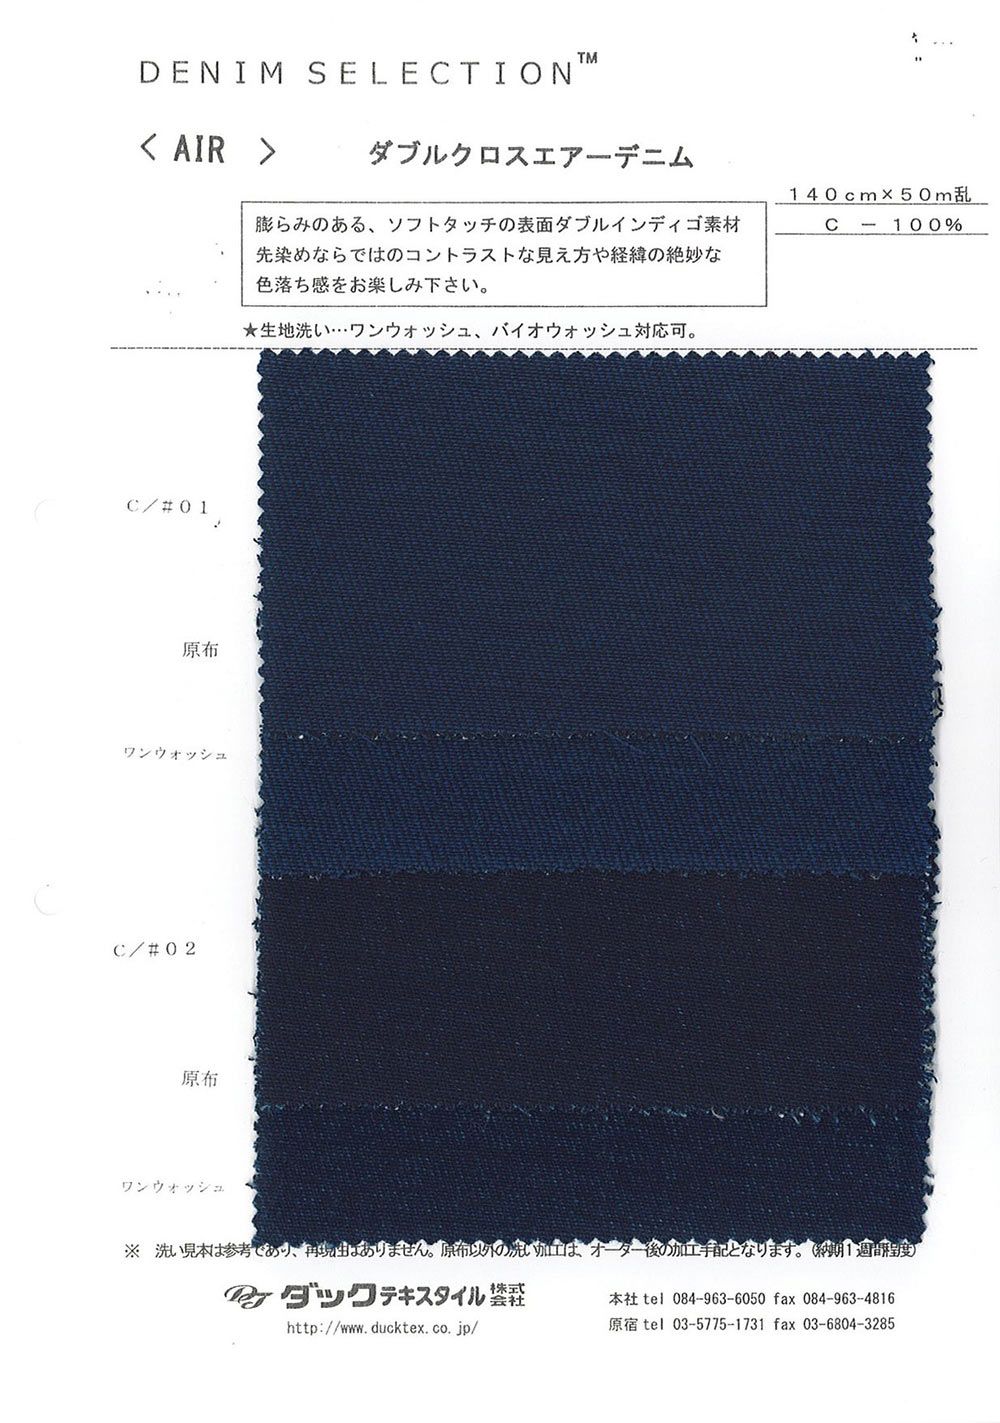 AIR Double Cross Air Denim[Textile / Fabric] DUCK TEXTILE